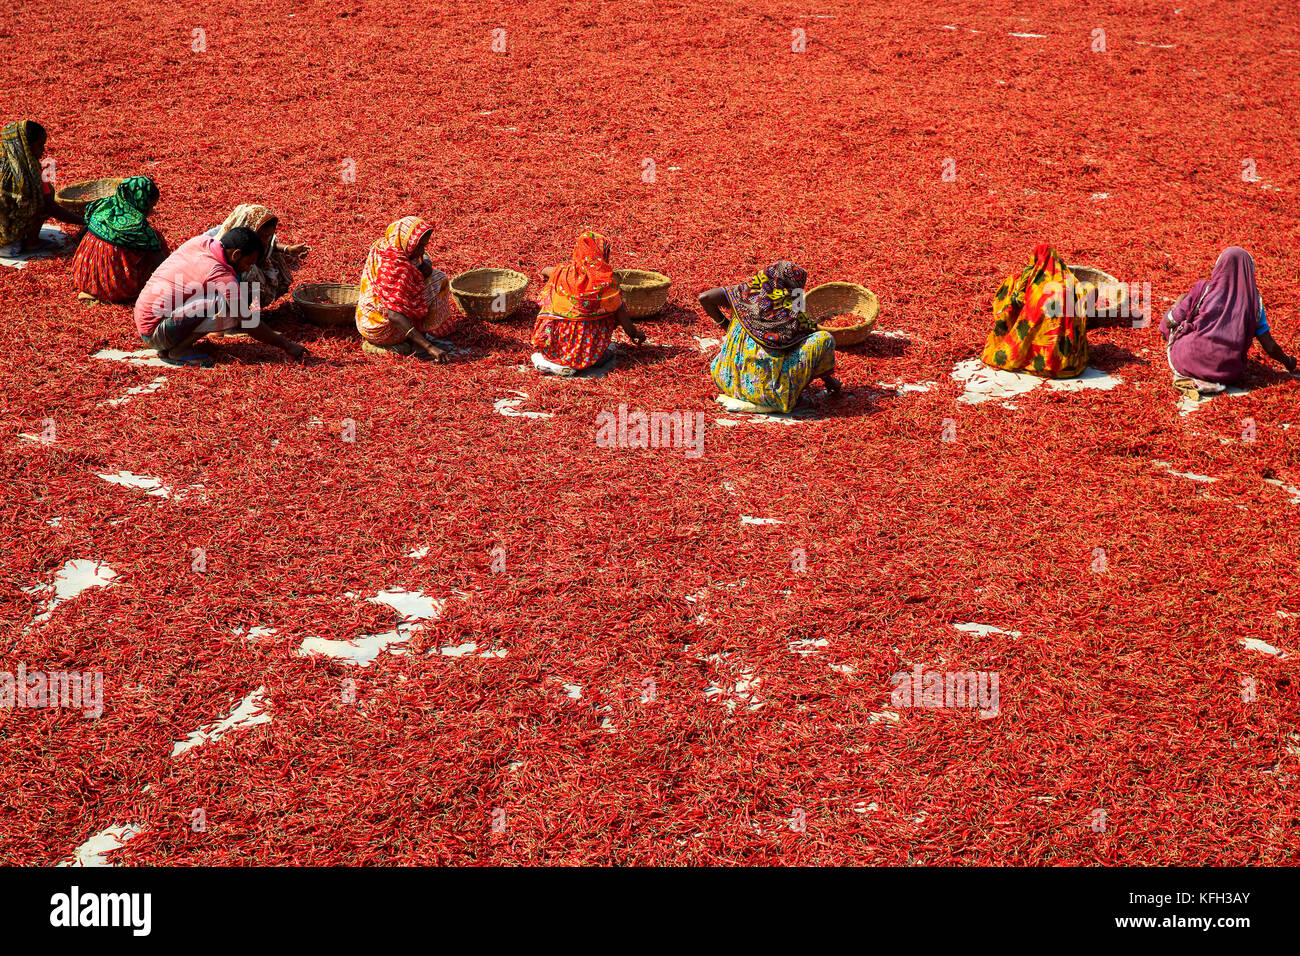 Women process and dry red chili pepper under the sun nearat Shariakandi in Bogra, Bangladesh. Stock Photo